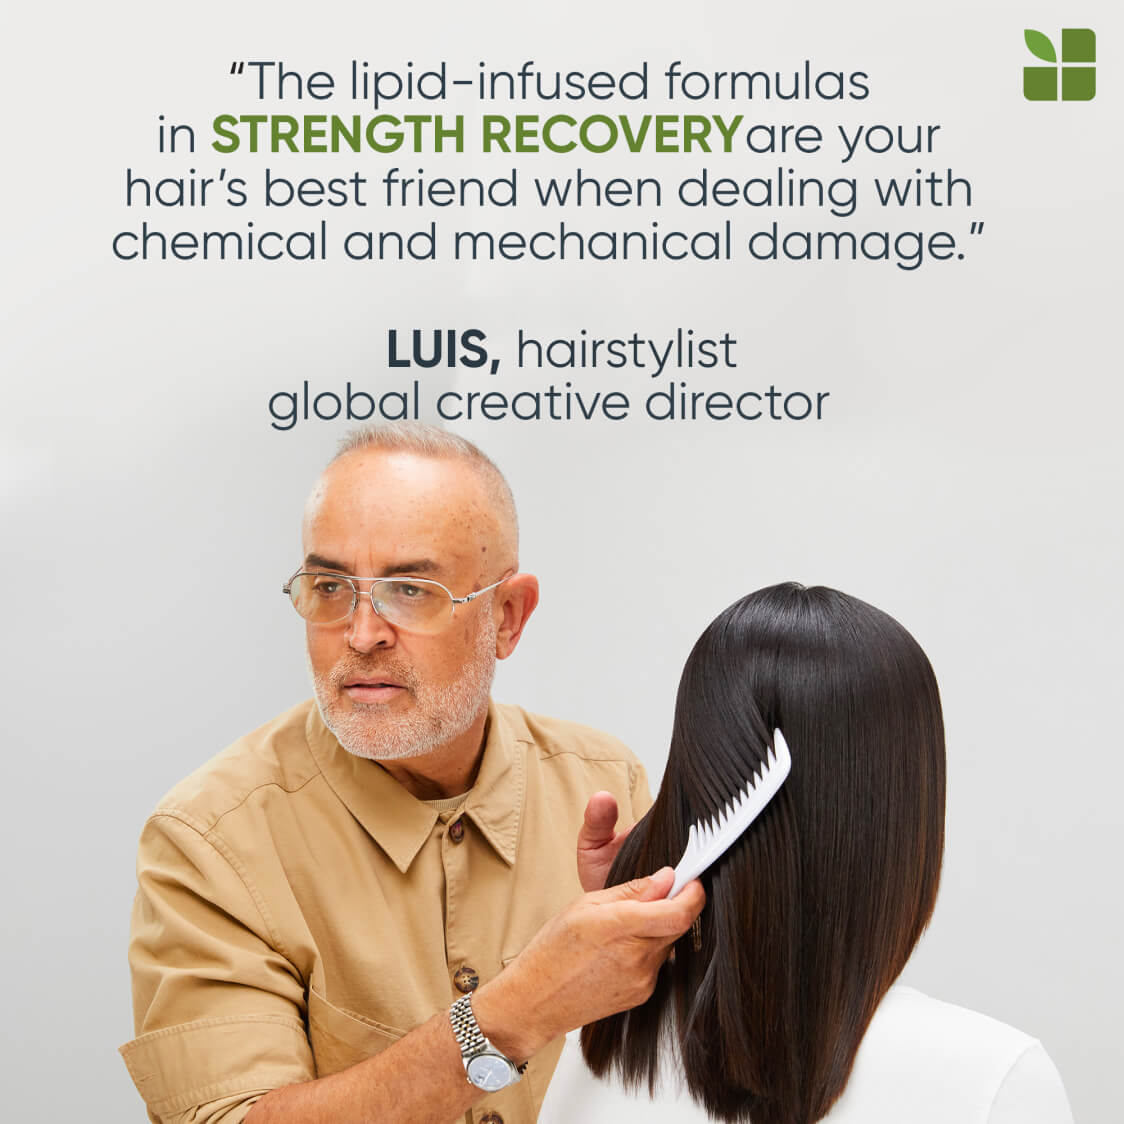 Luis, hairstylist